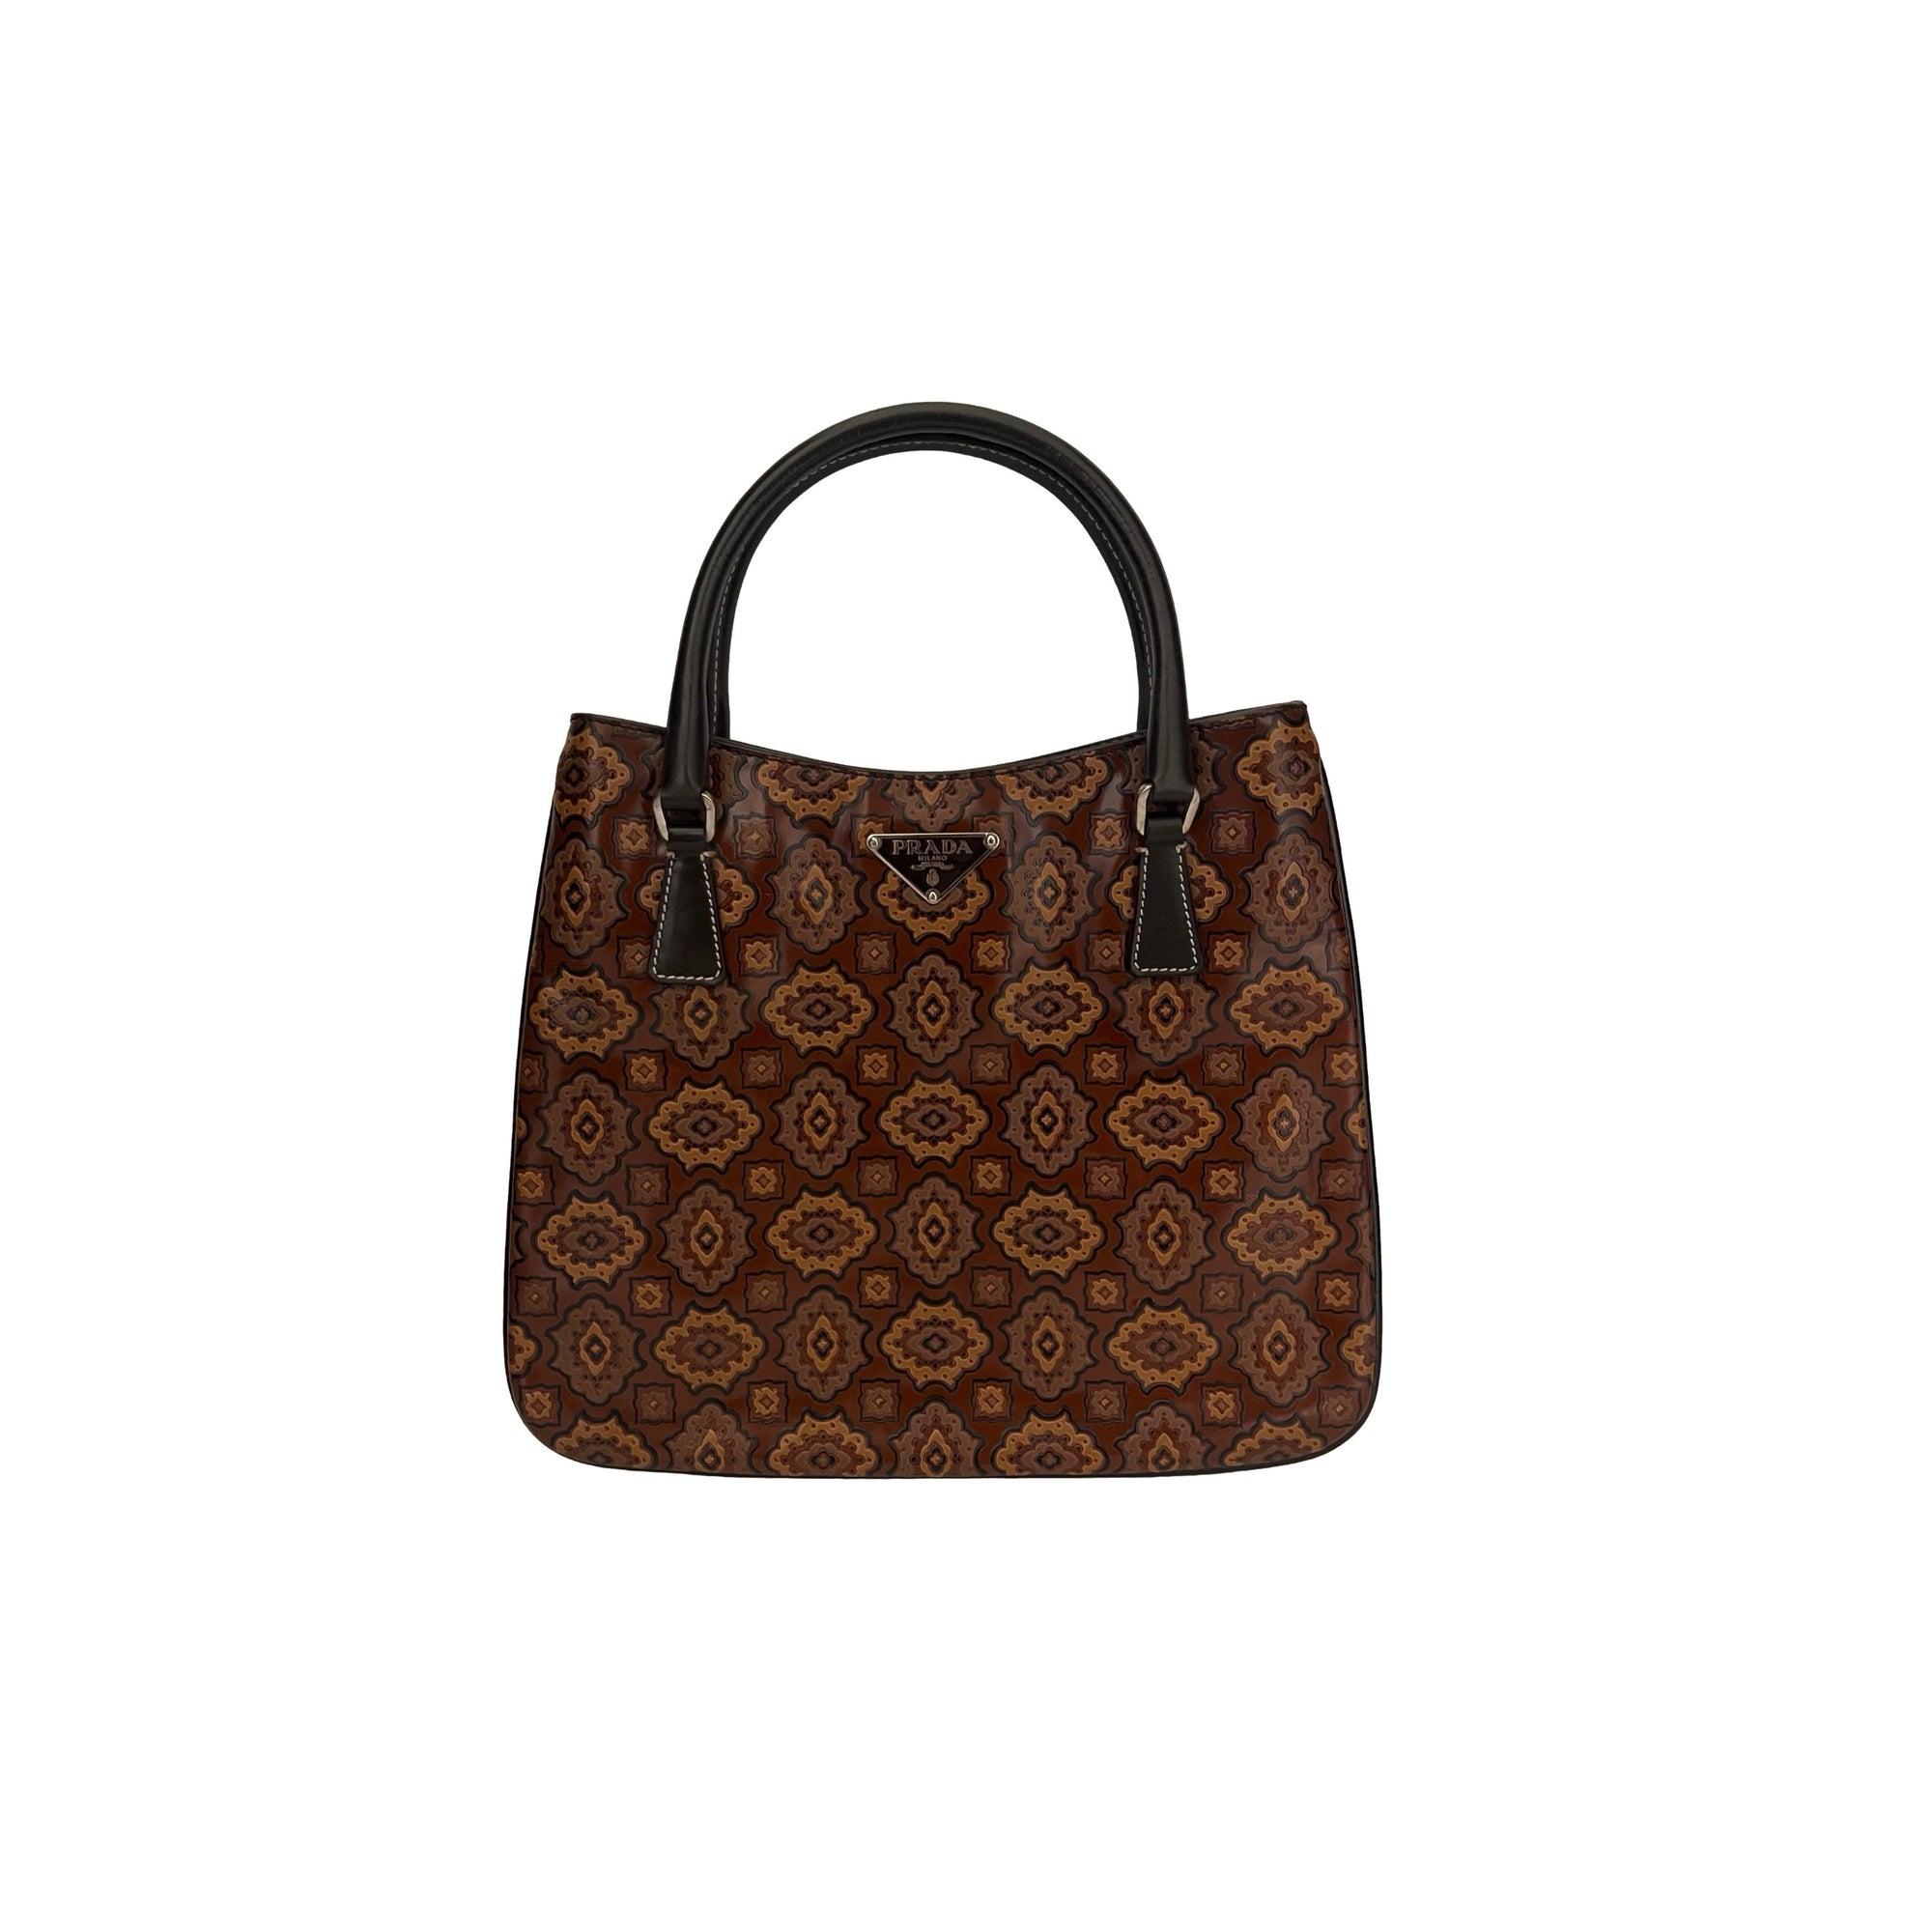 Prada Brown Brocade Top Handle Bag - Handbags